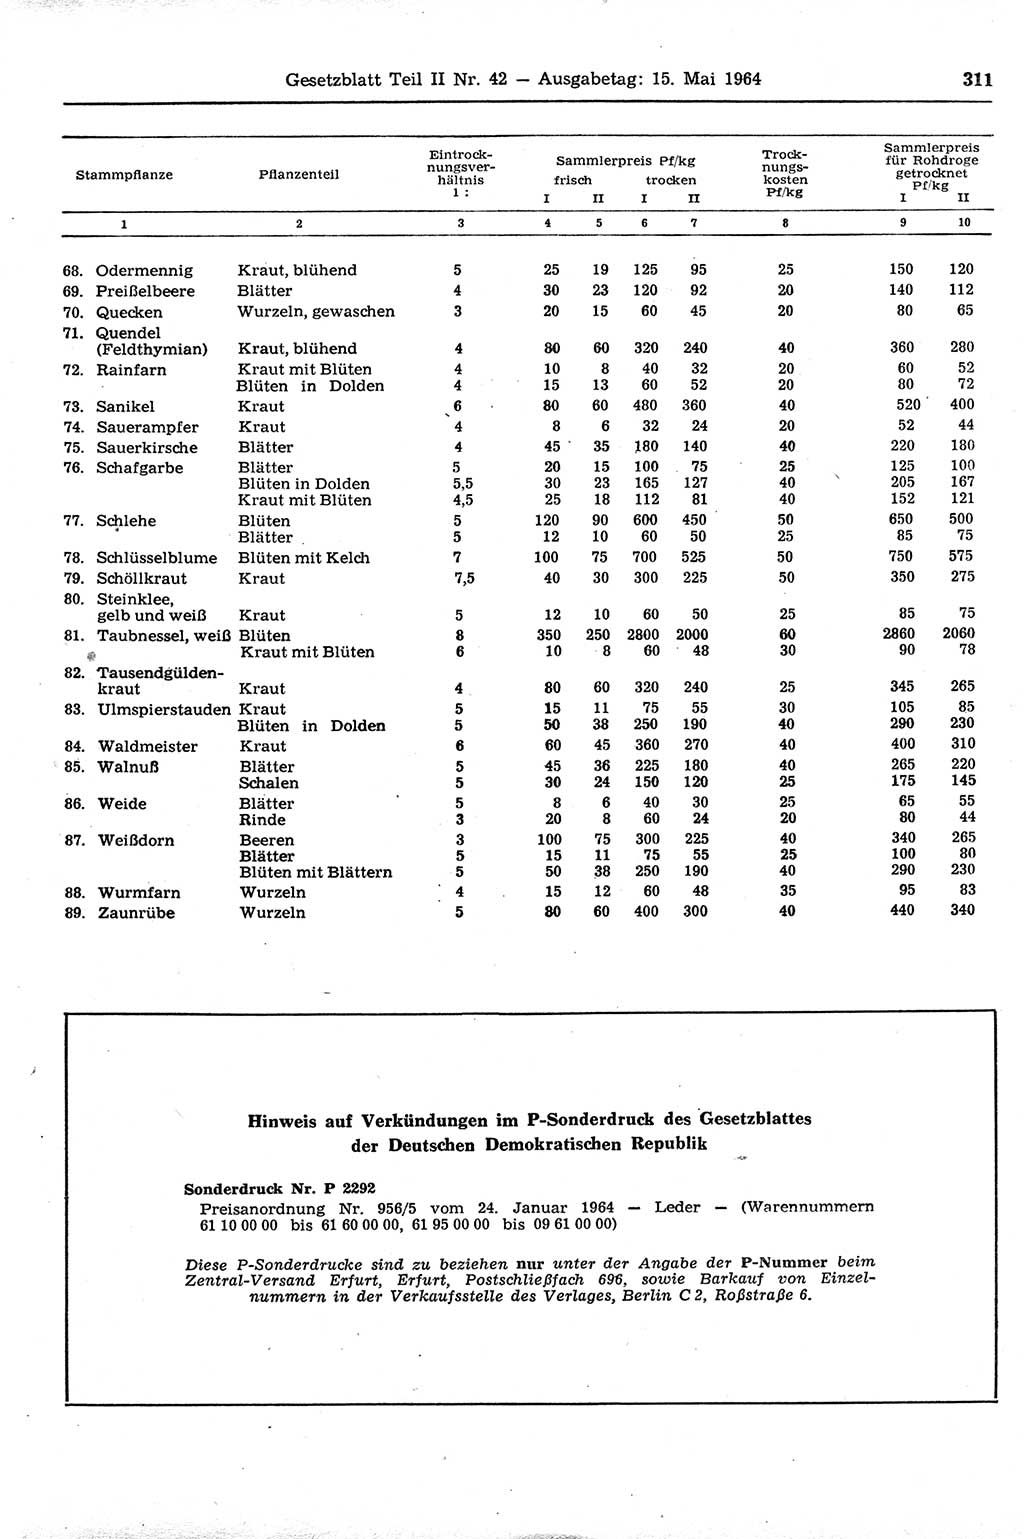 Gesetzblatt (GBl.) der Deutschen Demokratischen Republik (DDR) Teil ⅠⅠ 1964, Seite 311 (GBl. DDR ⅠⅠ 1964, S. 311)